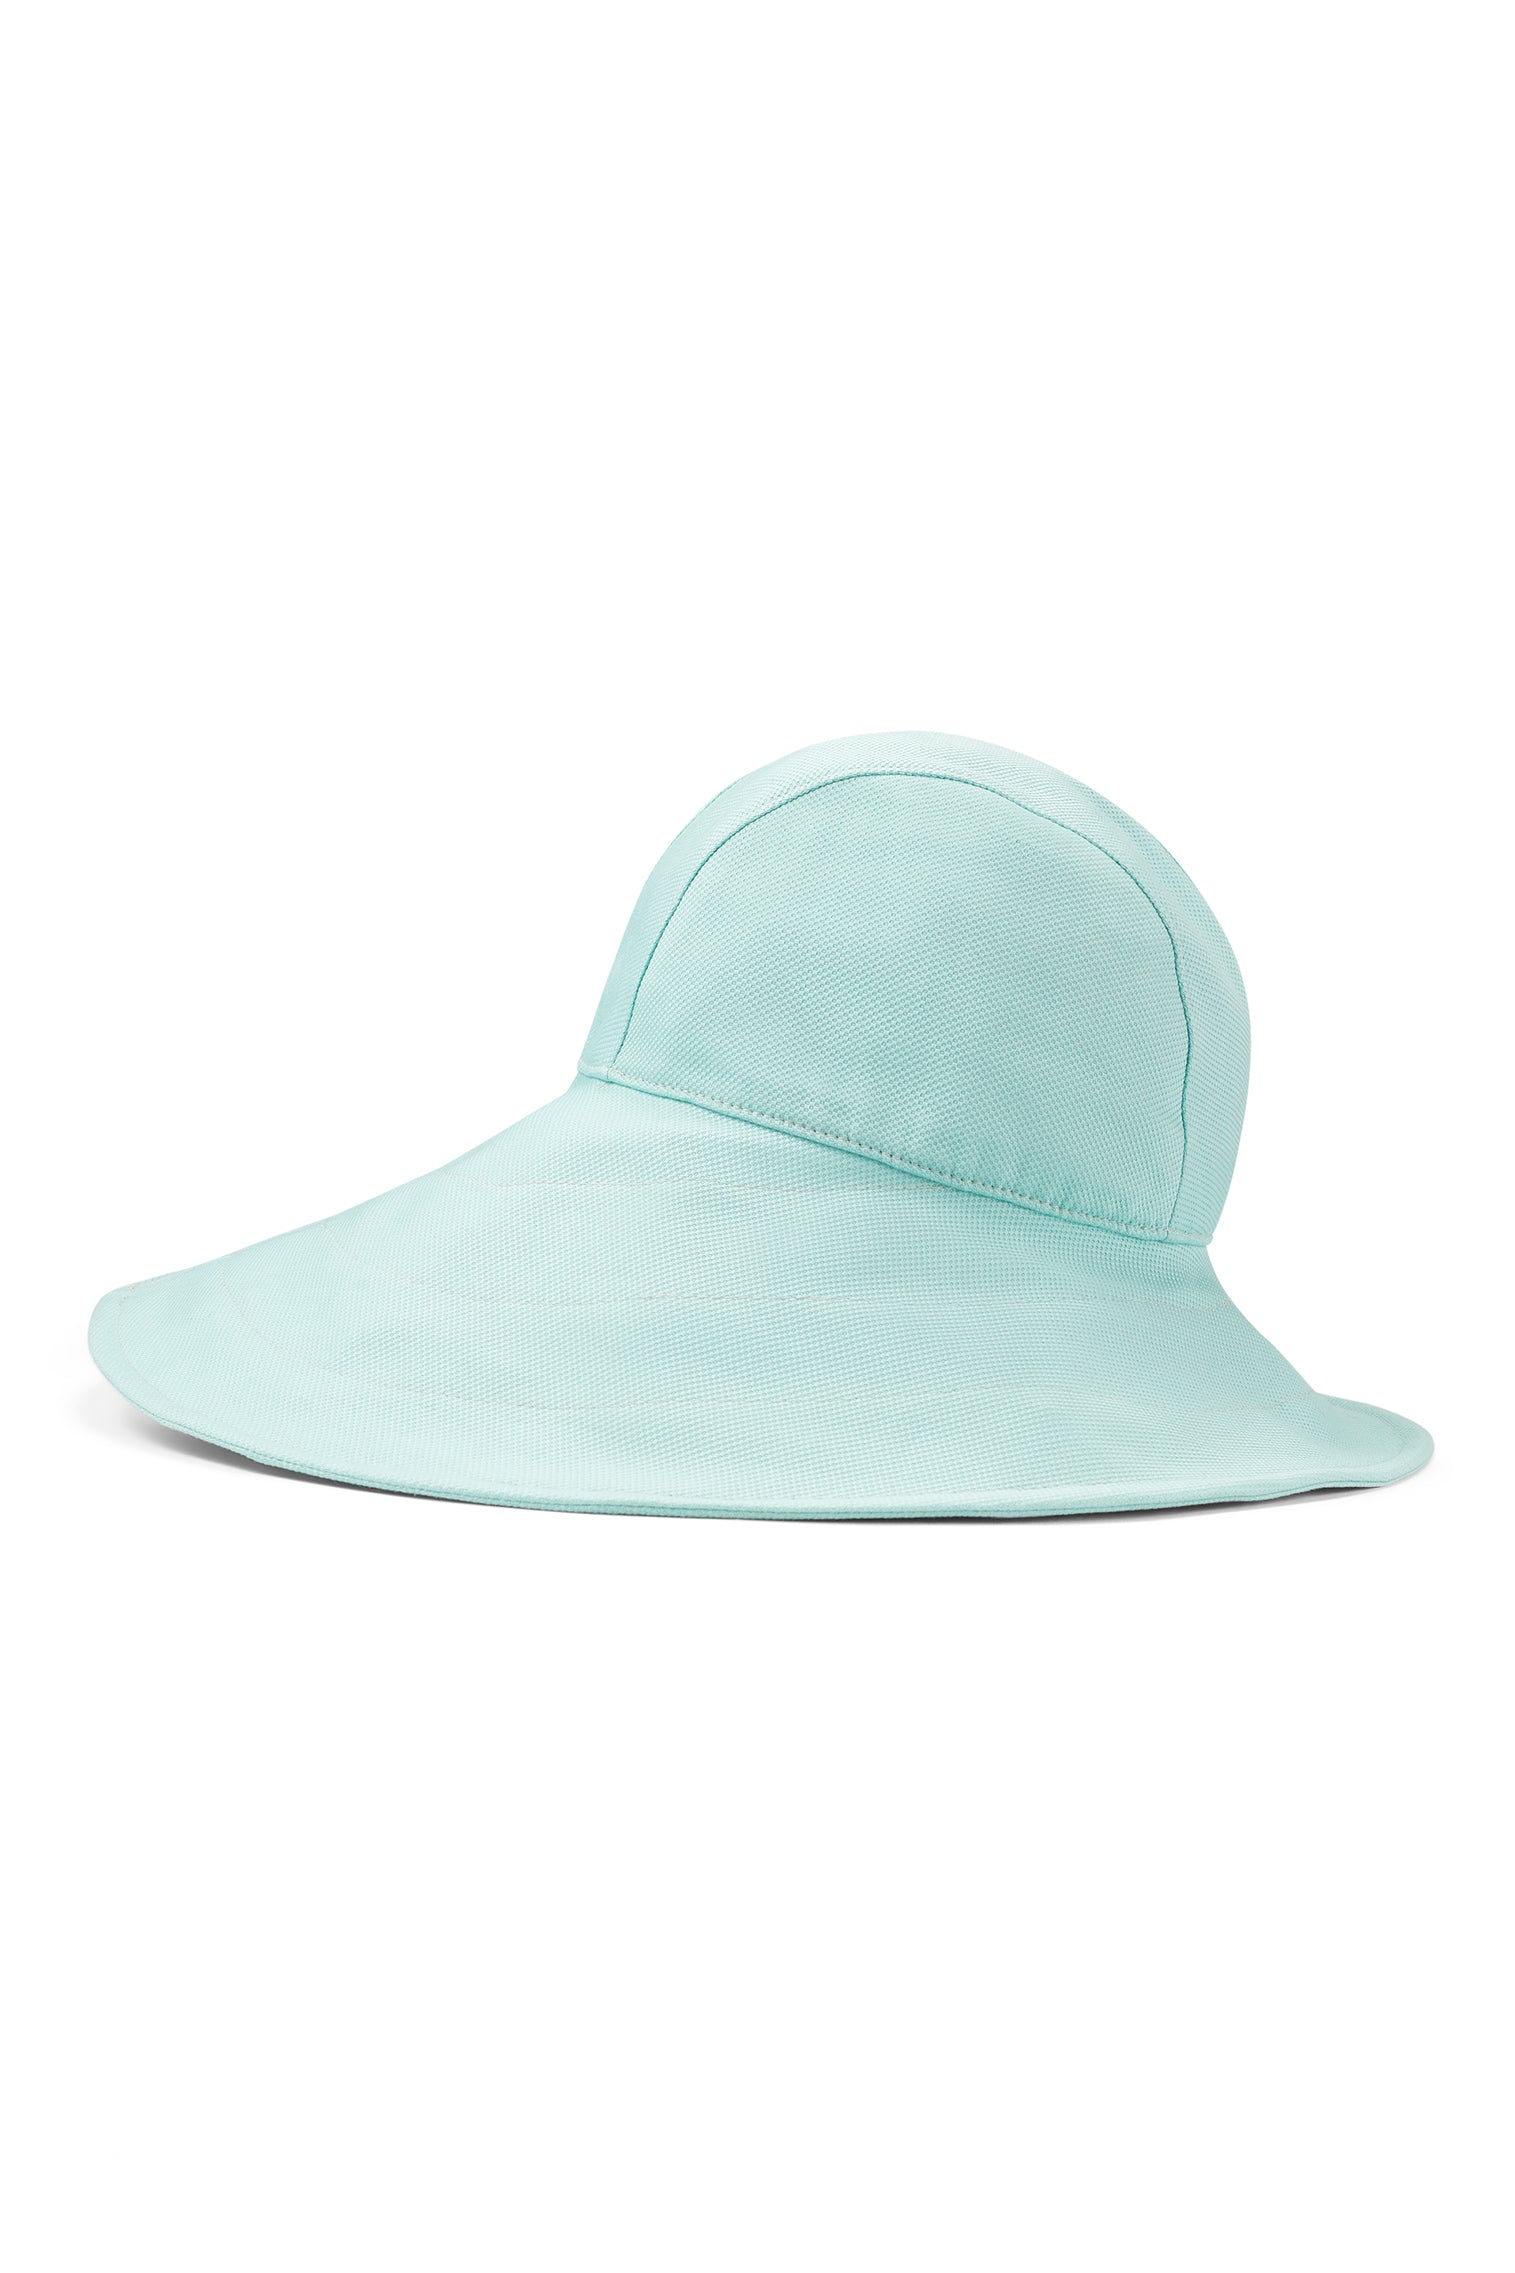 Elowyn Sou'Wester Sun Hat - New Season Hat Collection - Lock & Co. Hatters London UK